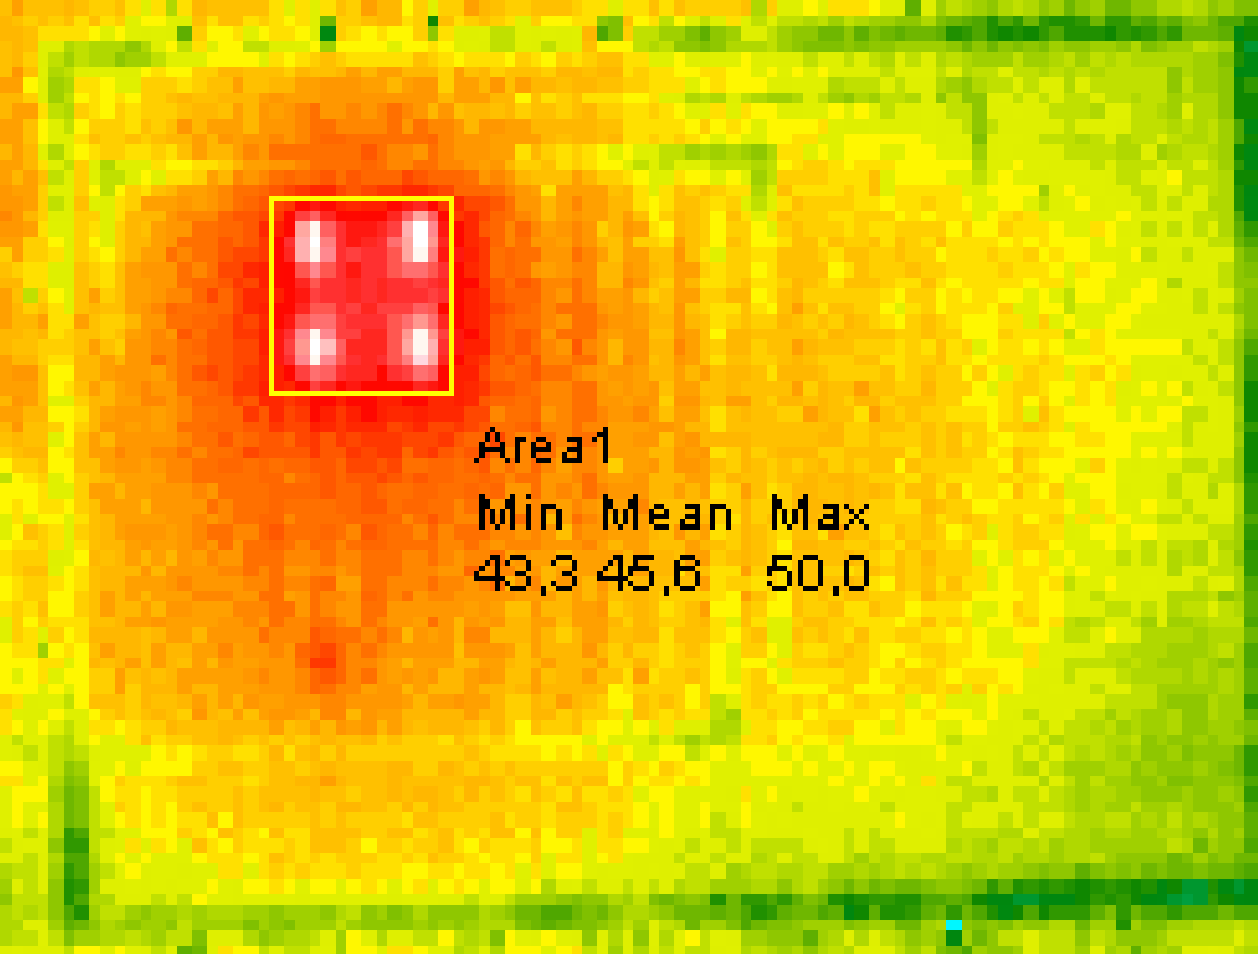 Analiza termiczna układów elektronicznych Diagnostyka termiczna układów elektronicznych Pomiary temperatury drabinki RC Analiza zdjęć termograficznych 10 D2 MES 4 2 0 1E-06 1E-04 1E-02 1E+00 1E+02 0.